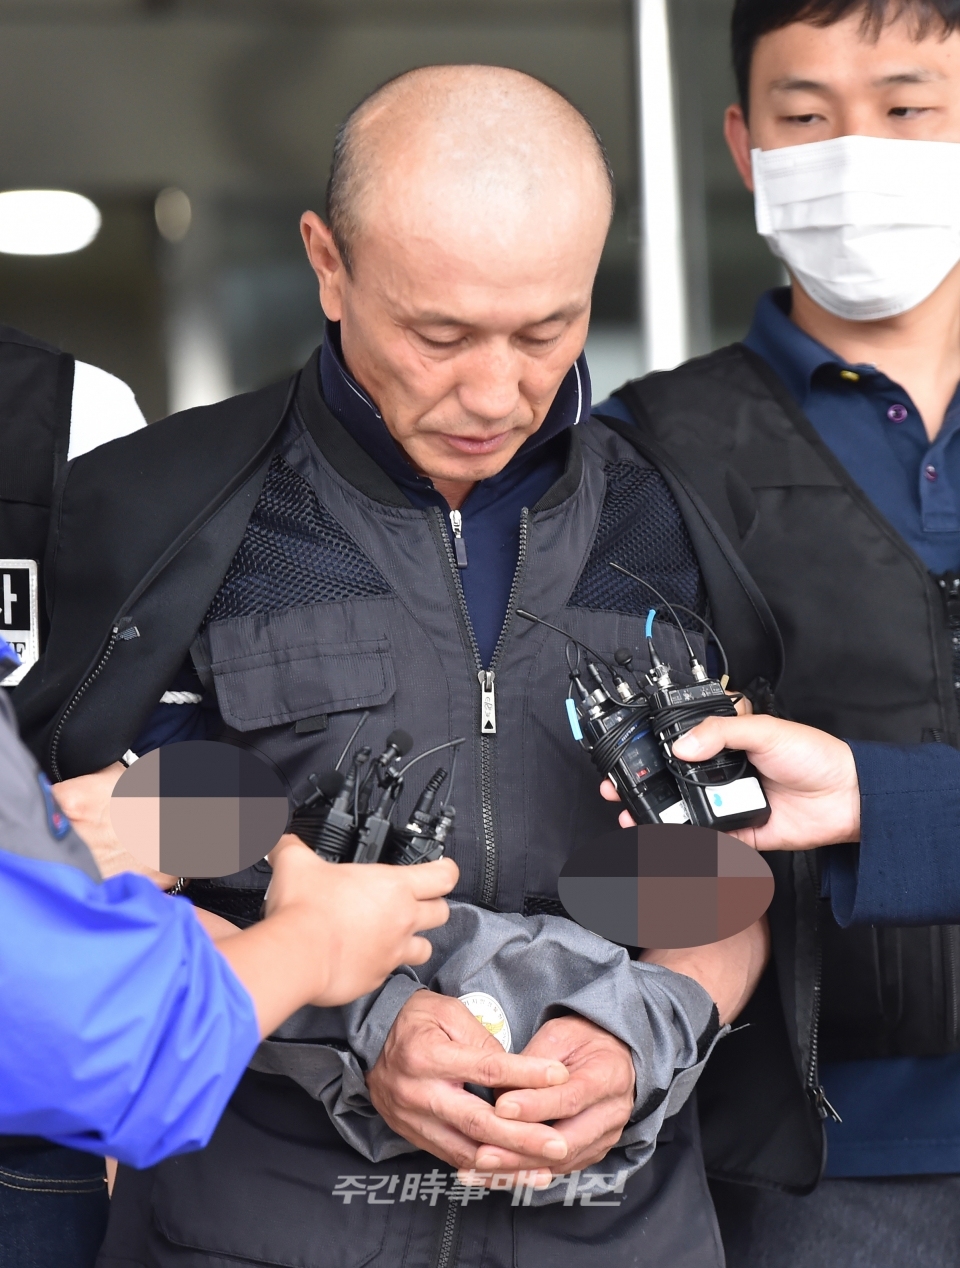 여자친구를 살해하고 사체를 유기한 혐의로 신상공개가 결정된 중국동포 유동수(49)가 지난해 8월5일 오전 경기 용인 동부경찰서에서 검찰로 이송되고 있는모습.ⓒ뉴시스